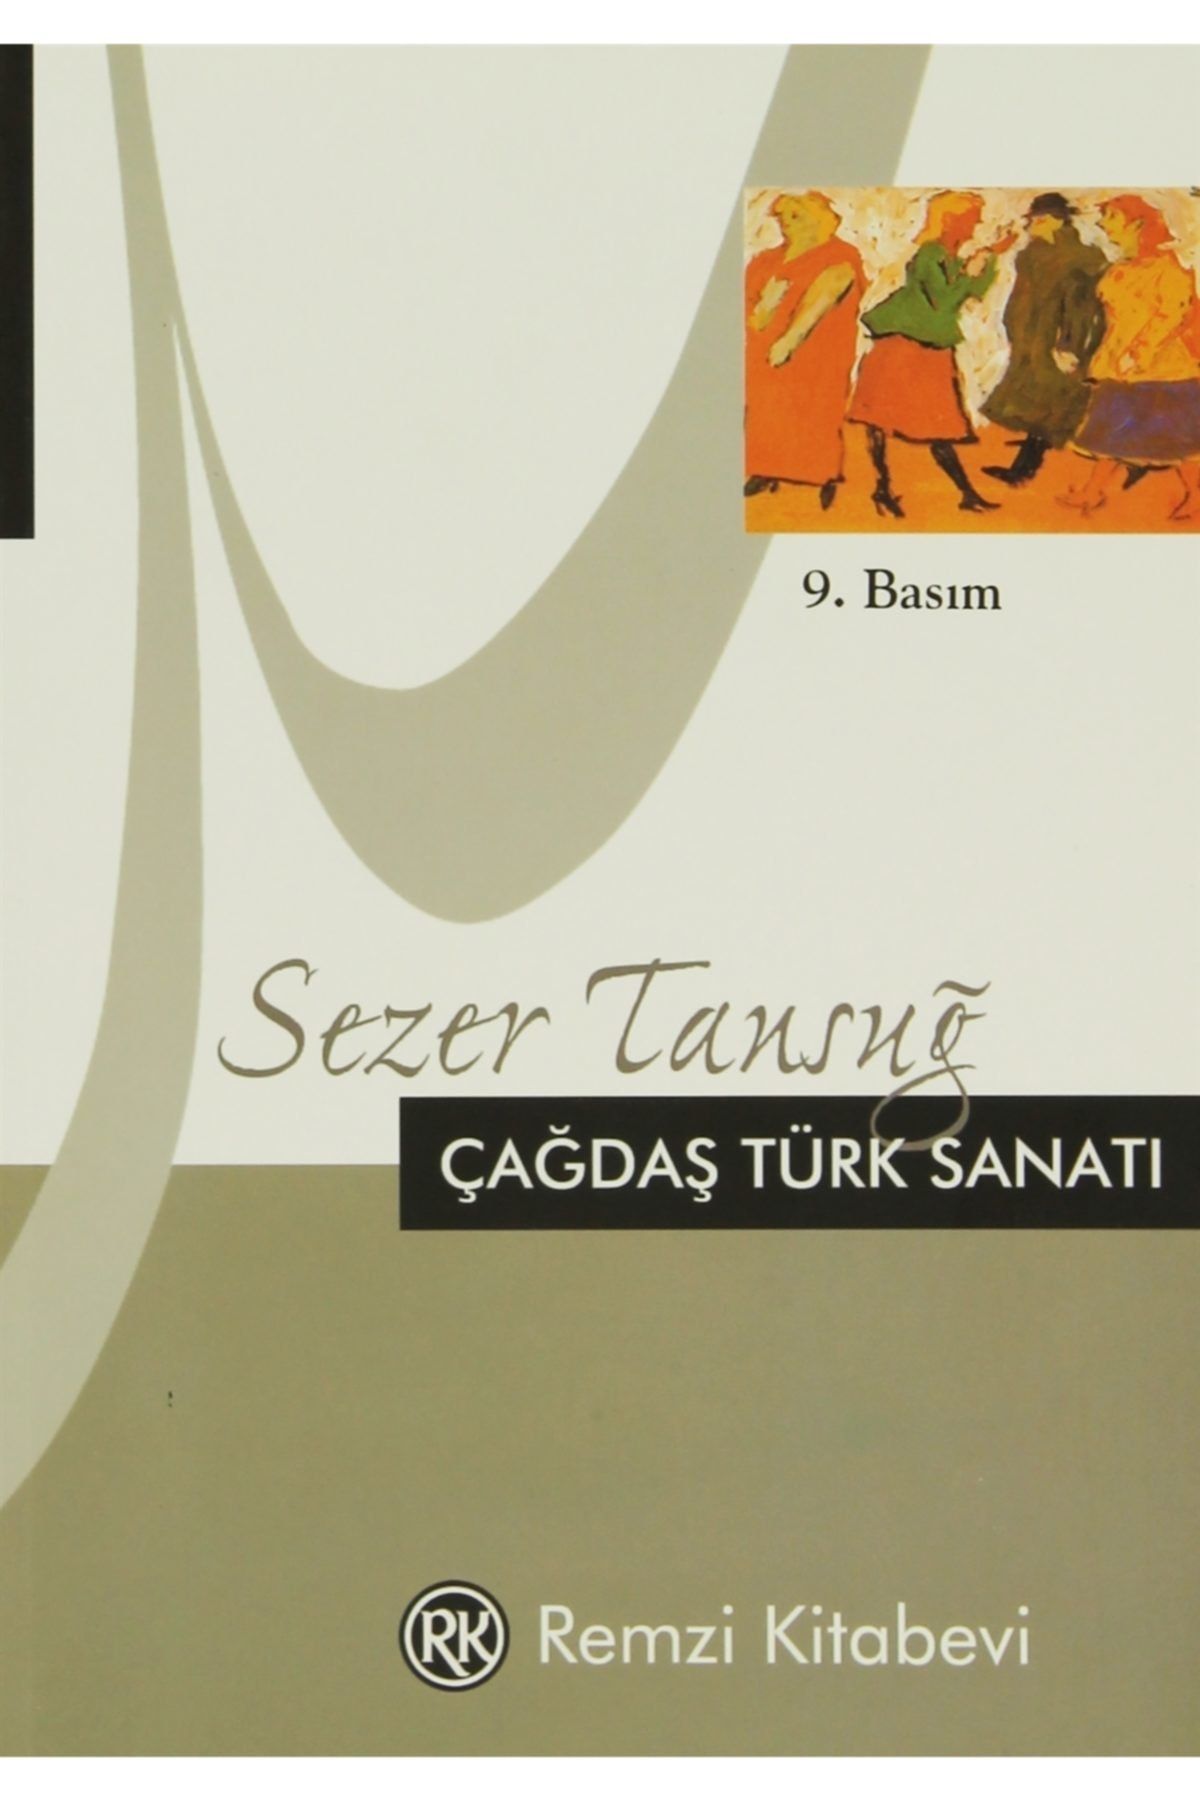 Remzi Kitabevi Çağdaş Türk Sanatı